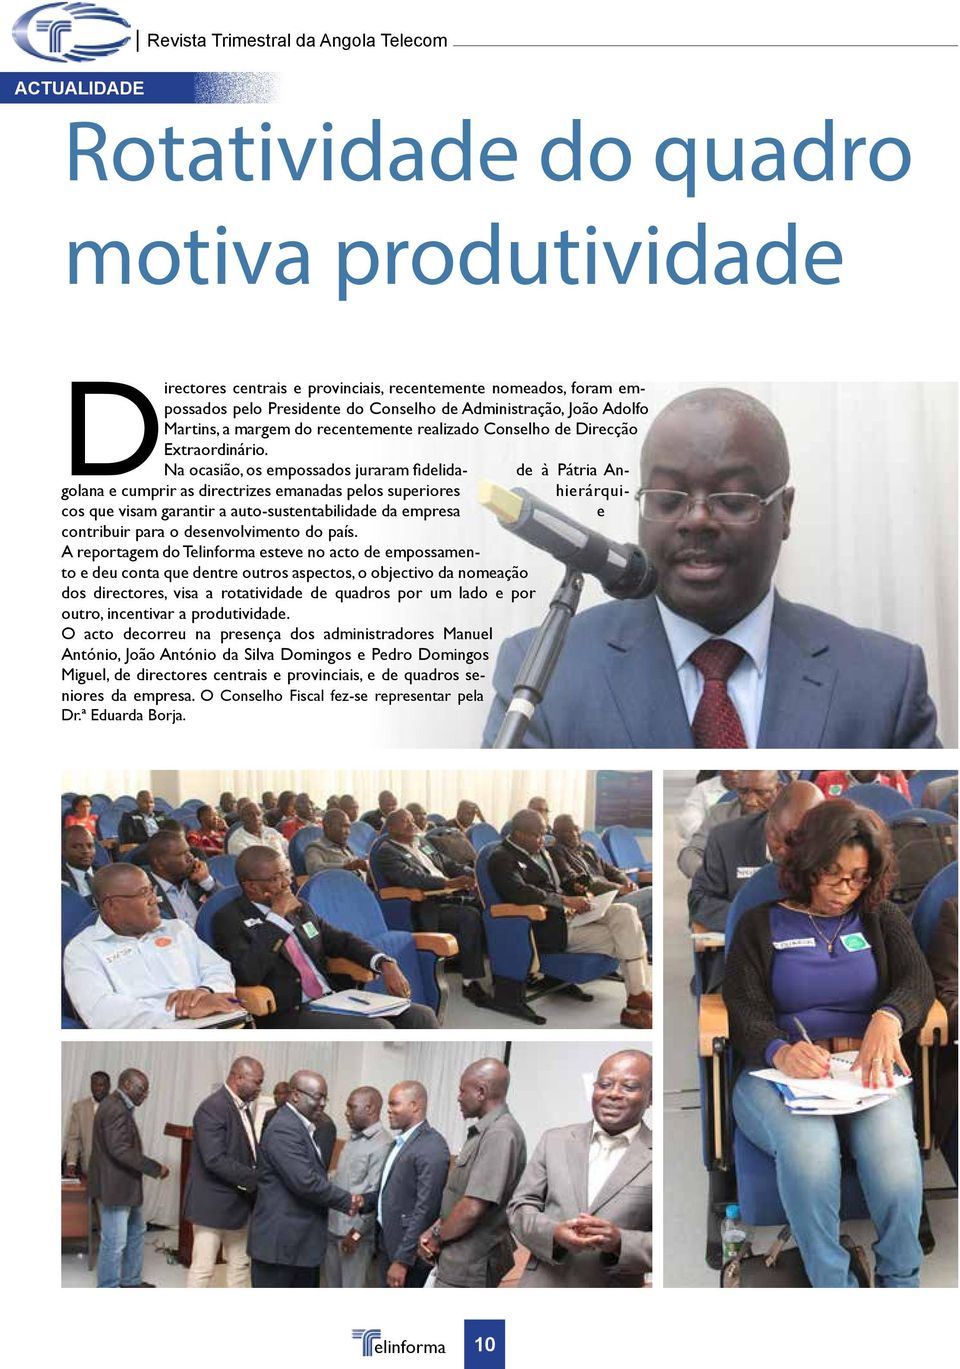 Na ocasião, os empossados juraram fidelida- de à Pátria Angolana e cumprir as directrizes emanadas pelos superiores hierárquicos que visam garantir a auto-sustentabilidade da empresa e contribuir